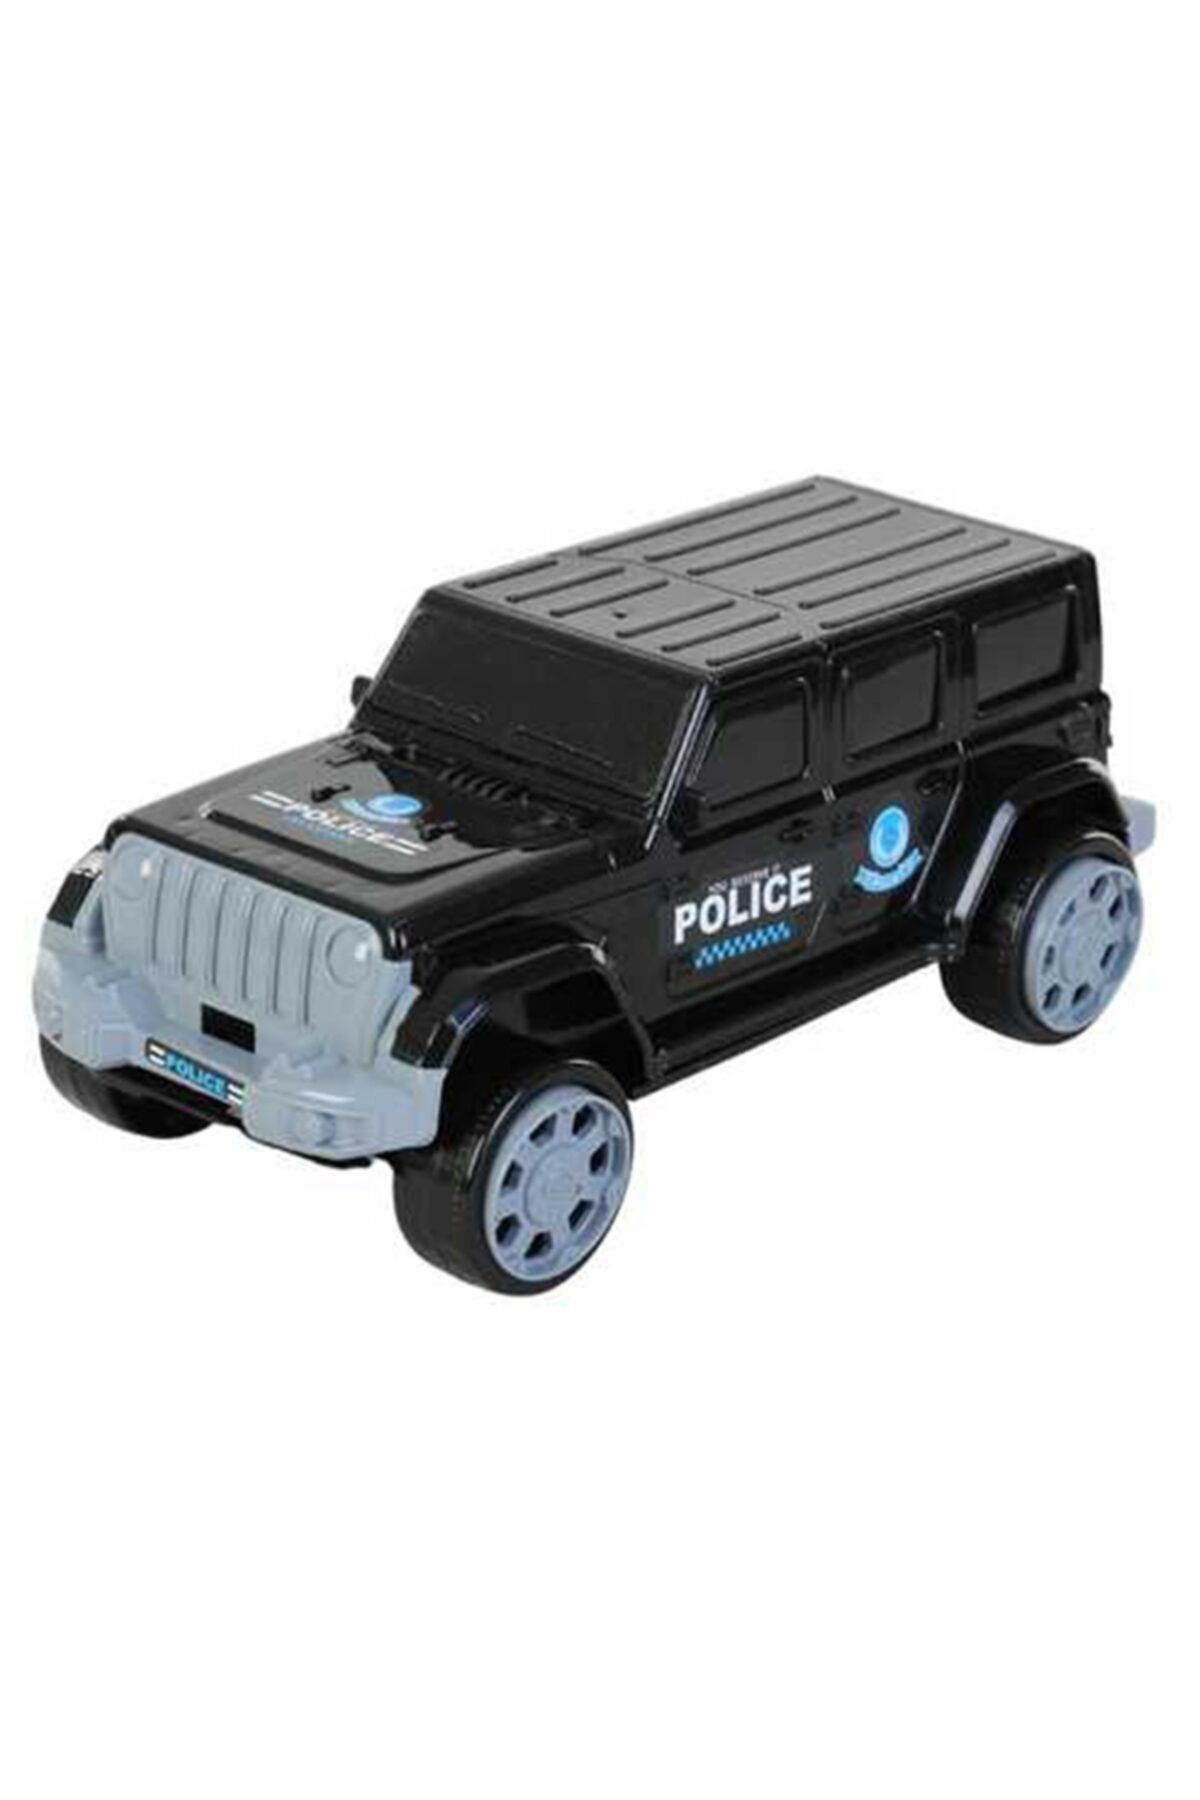 Özka Marka: Kutulu Polis Jeep Oyun Seti Kategori: Spor Oyuncakları